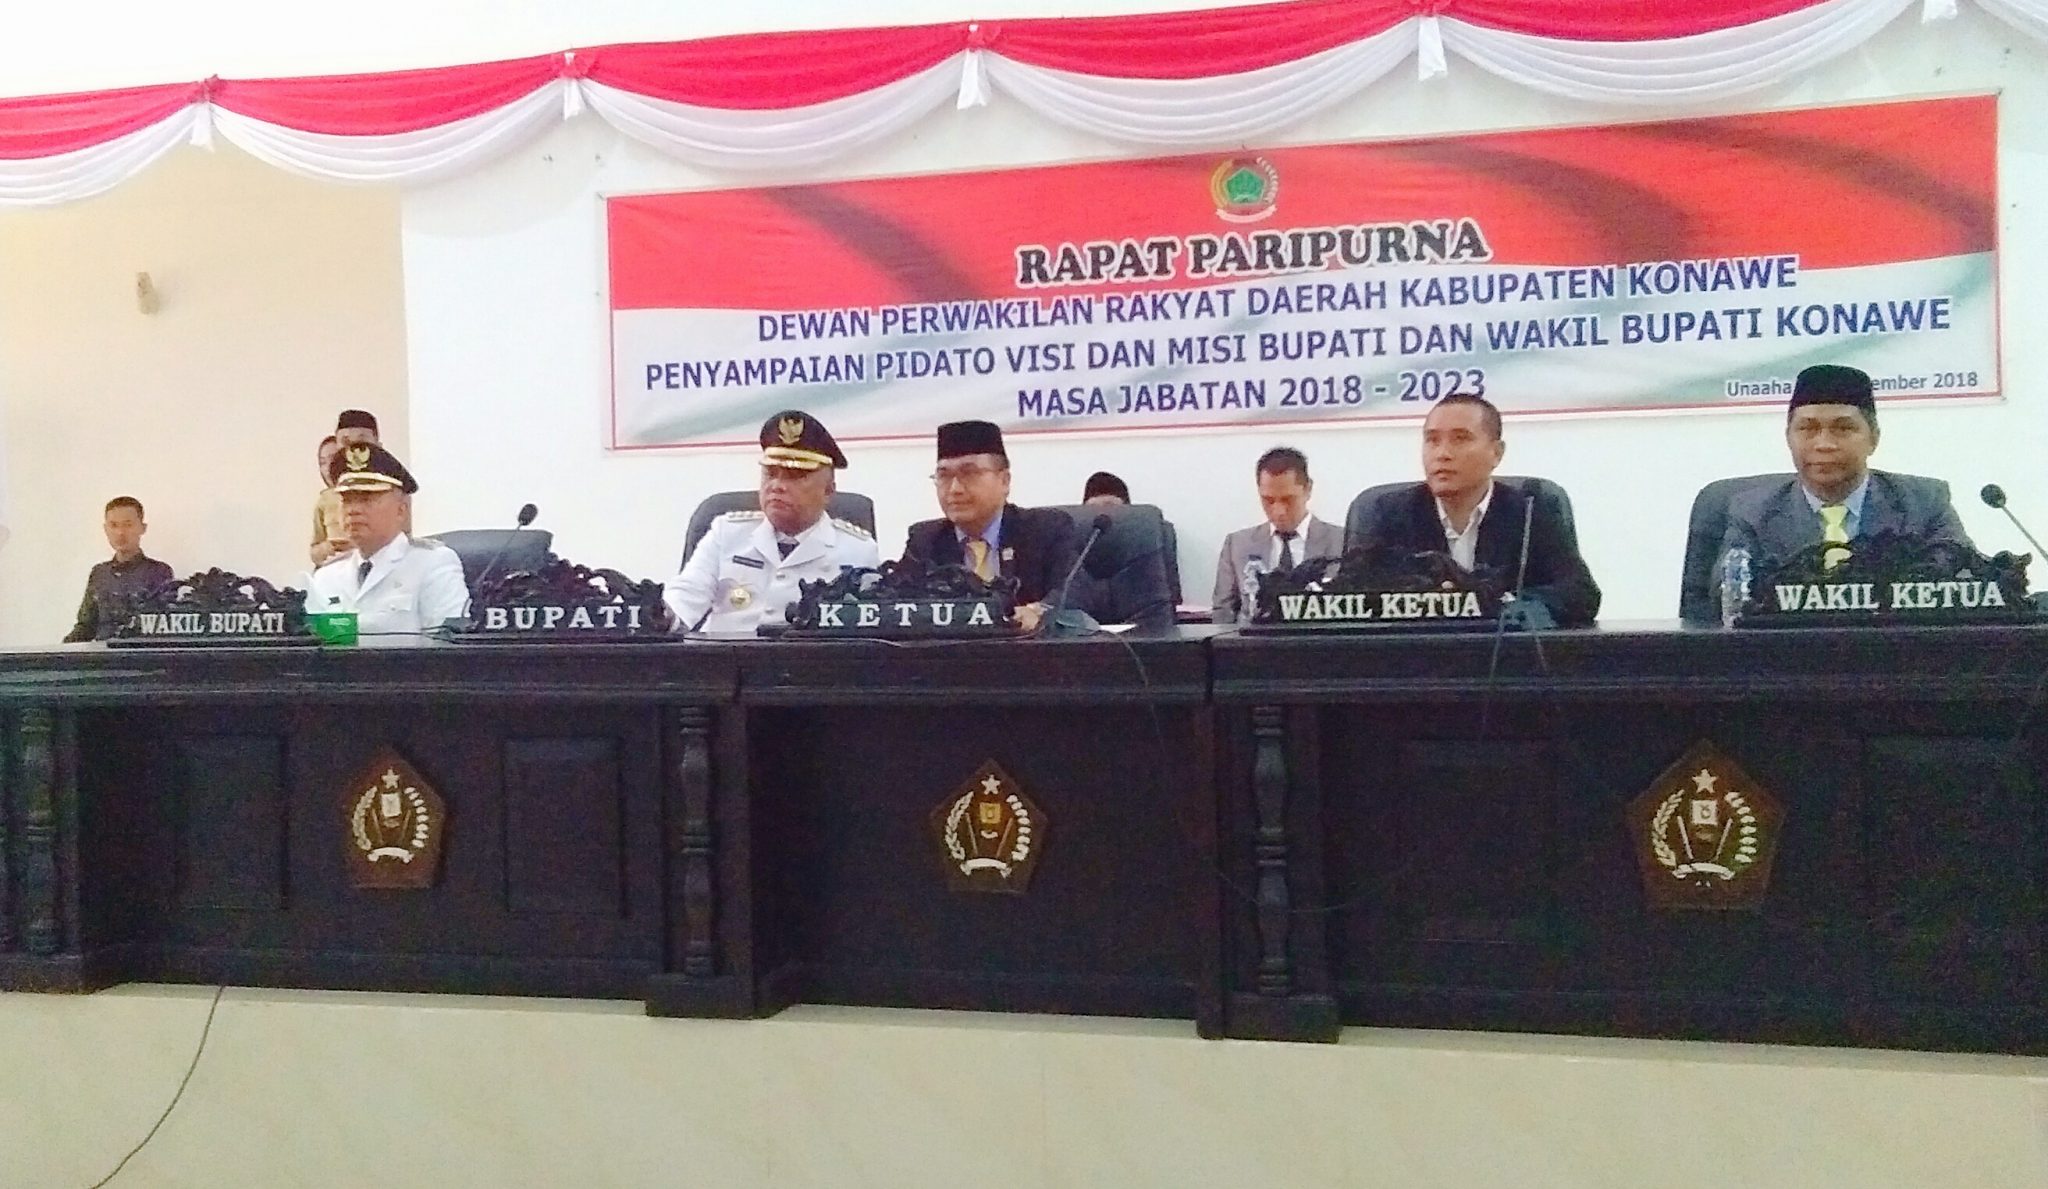 Rapat paripurna DPRD terkait visi misi Bupati dan Wakil Bupati Konawe, Kery Saiful Konggoasa dan Gusli Topan Sabara, Selasa (25/9/2018). (Foto: Mas Jaya / SULTRAKINI.COM)